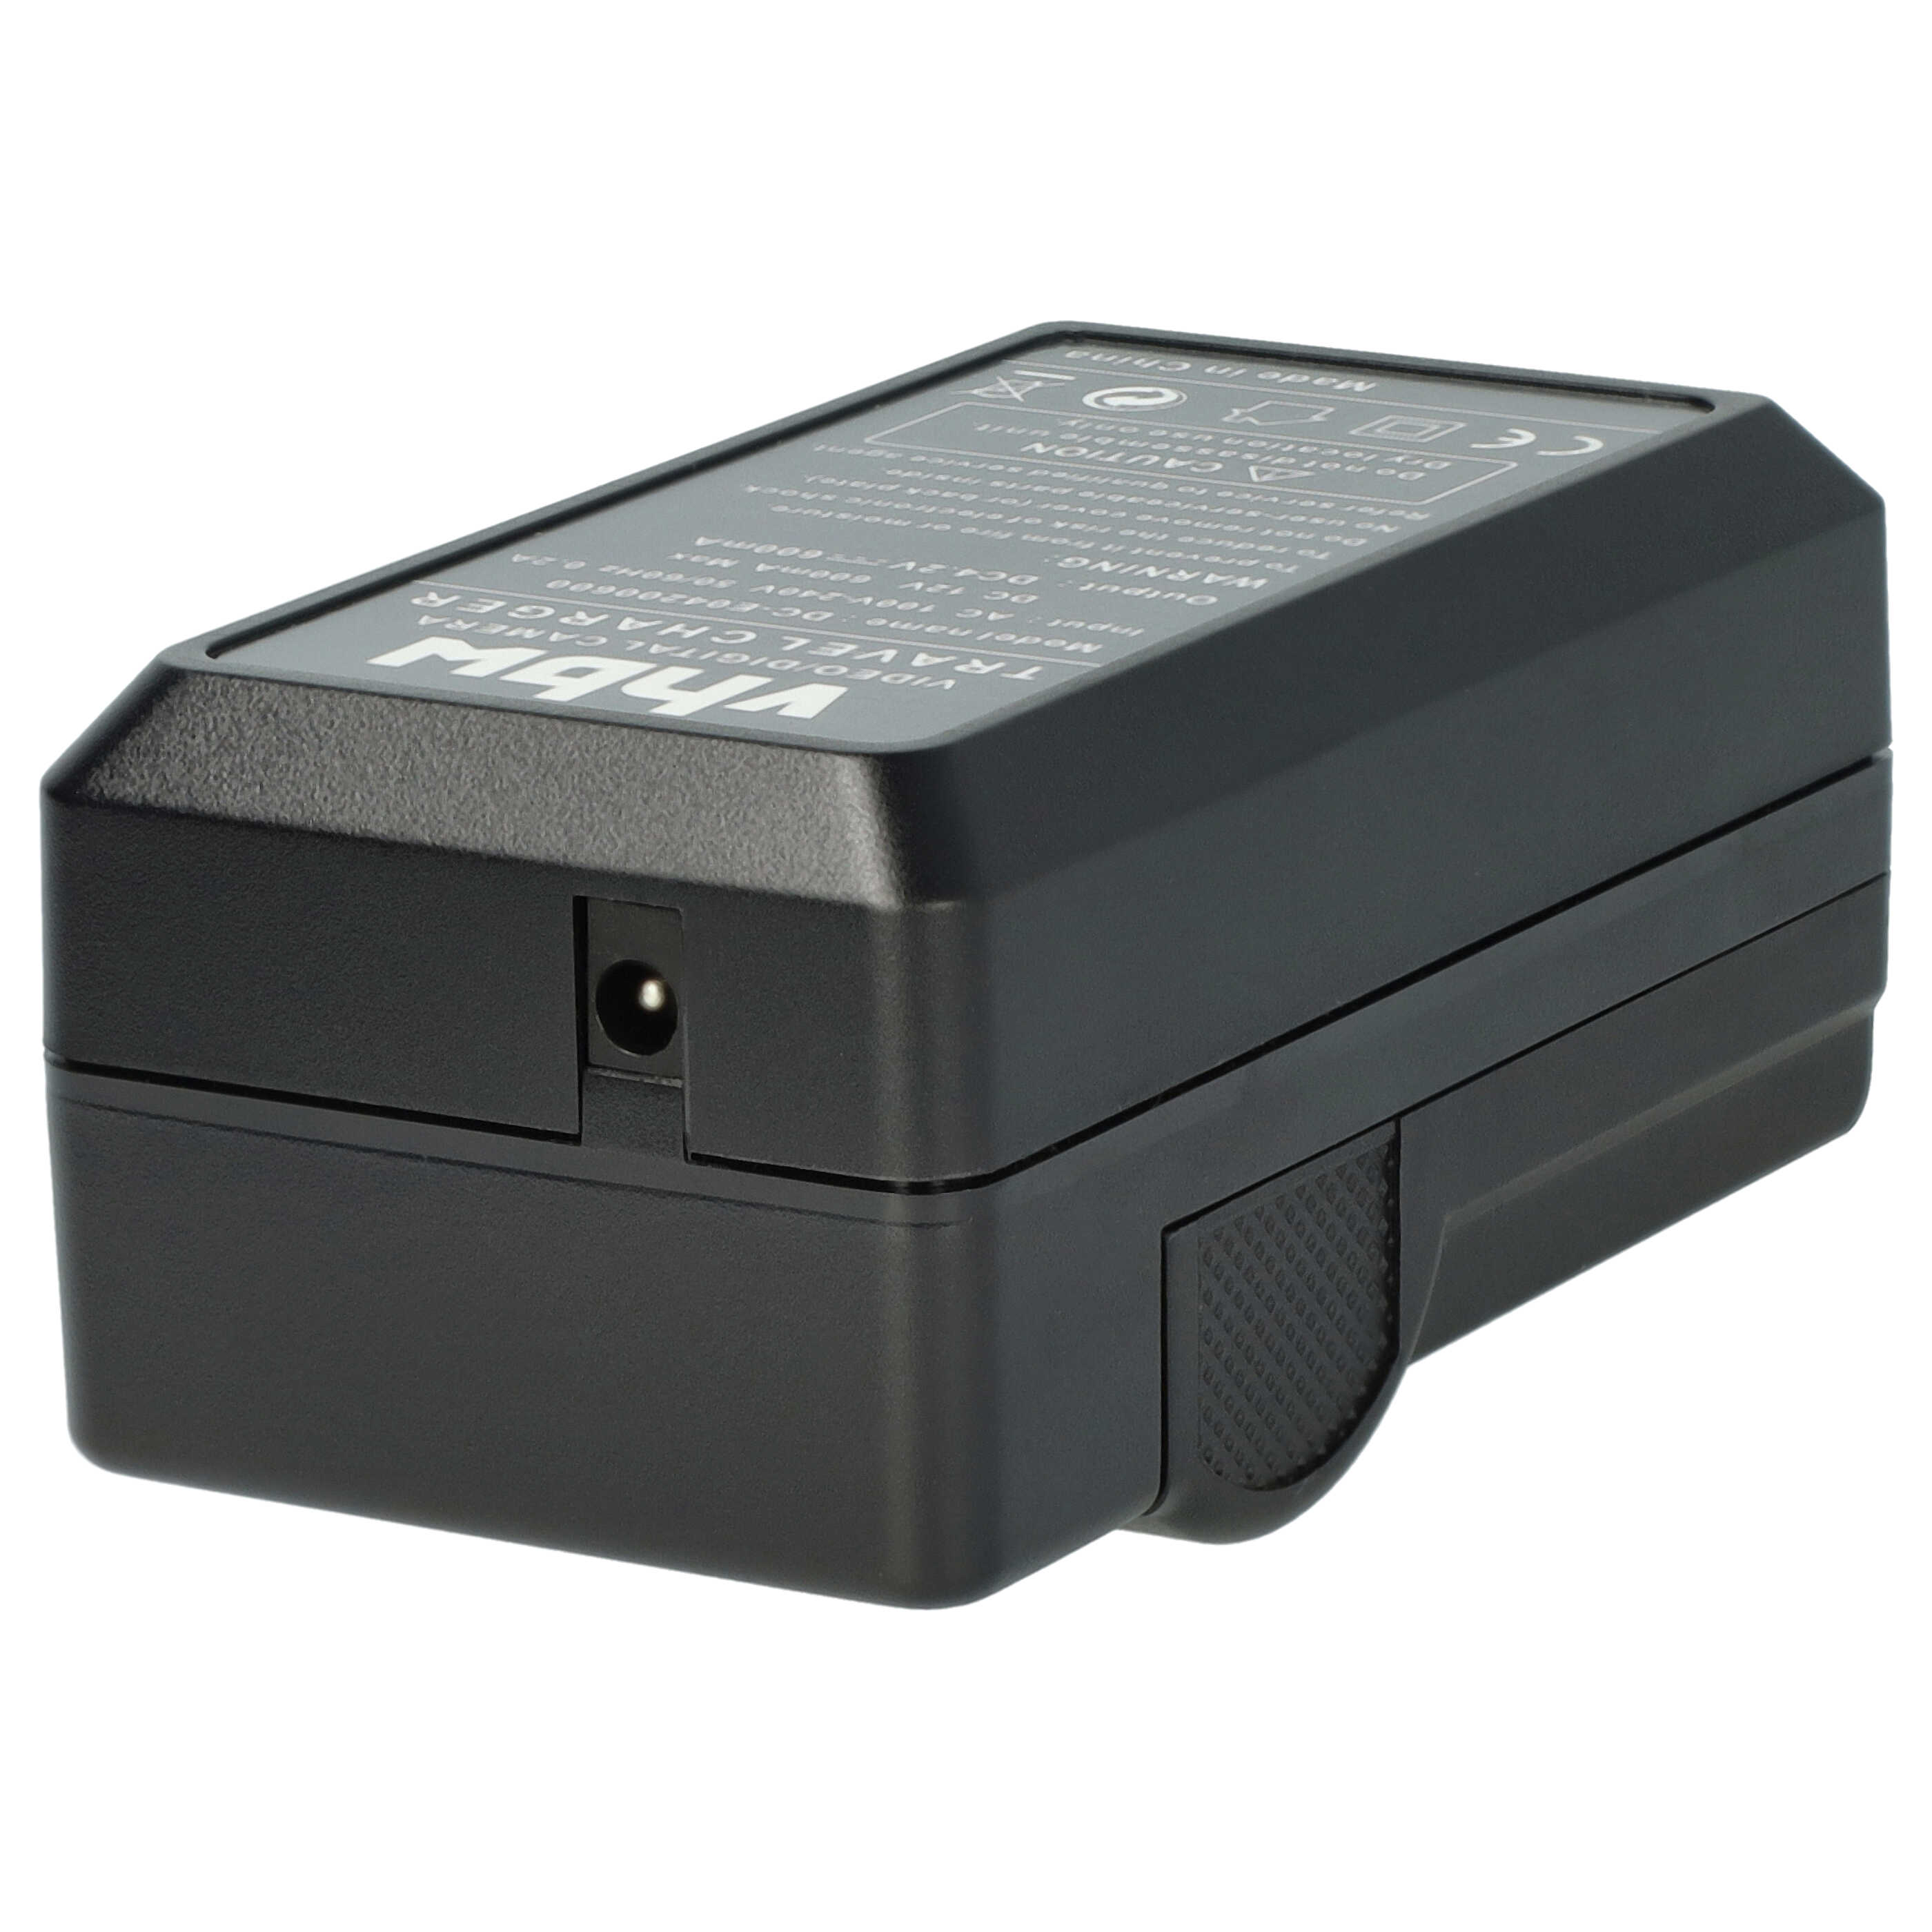 Akku Ladegerät passend für Lumix DMC-FT7 Kamera u.a. - 0,6 A, 4,2 V